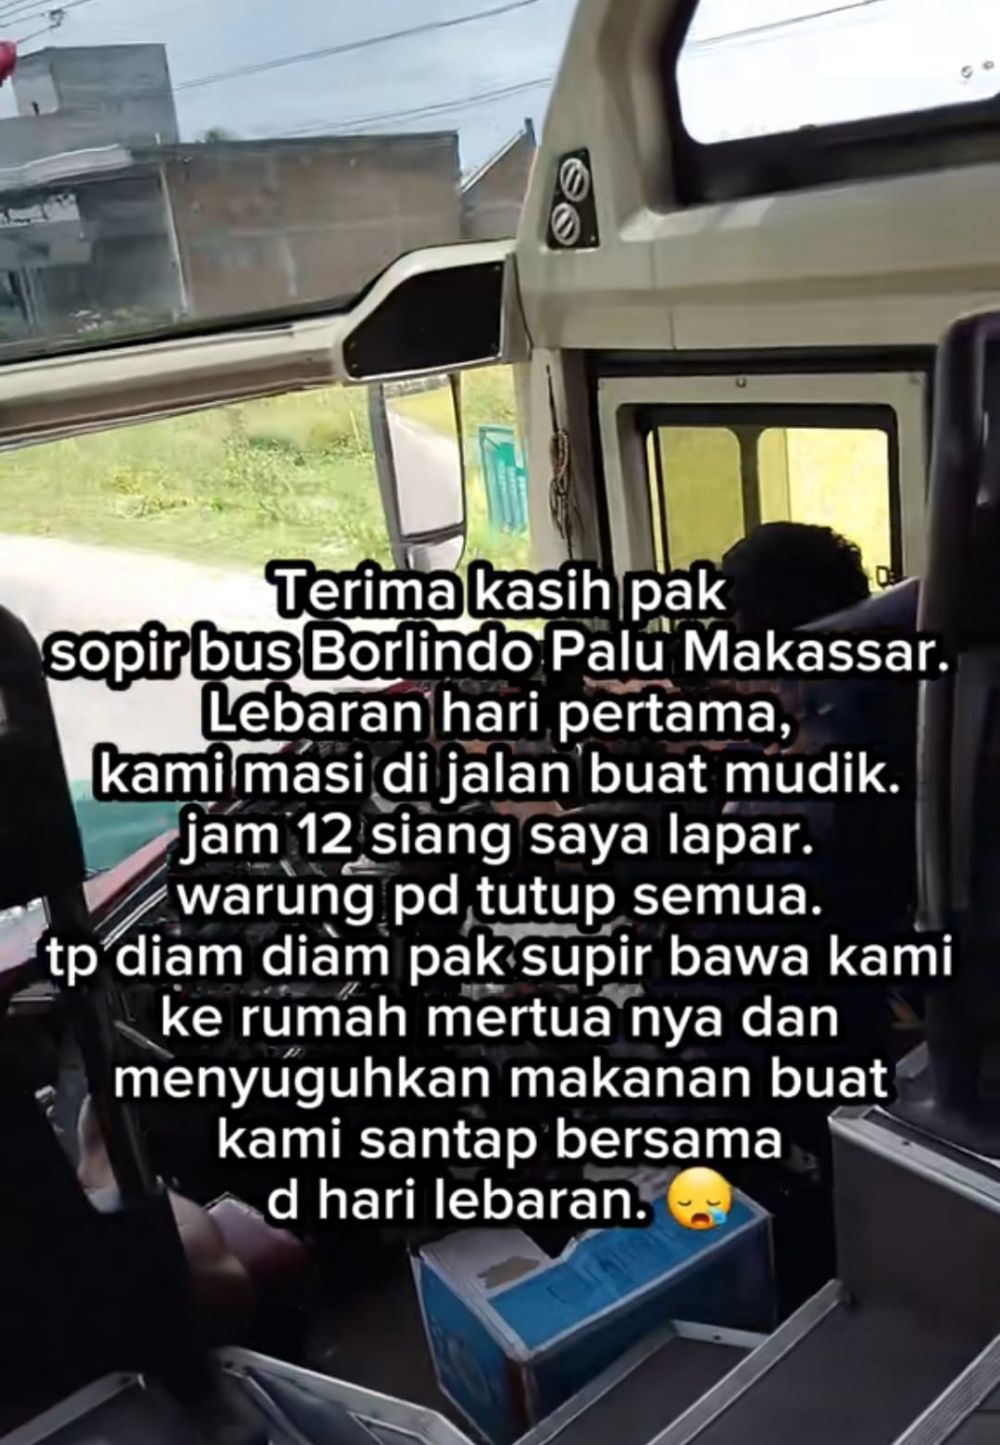 Kisah sopir bus singgahkan penumpang lapar ke rumah mertua untuk makan saat Lebaran, panen pujian